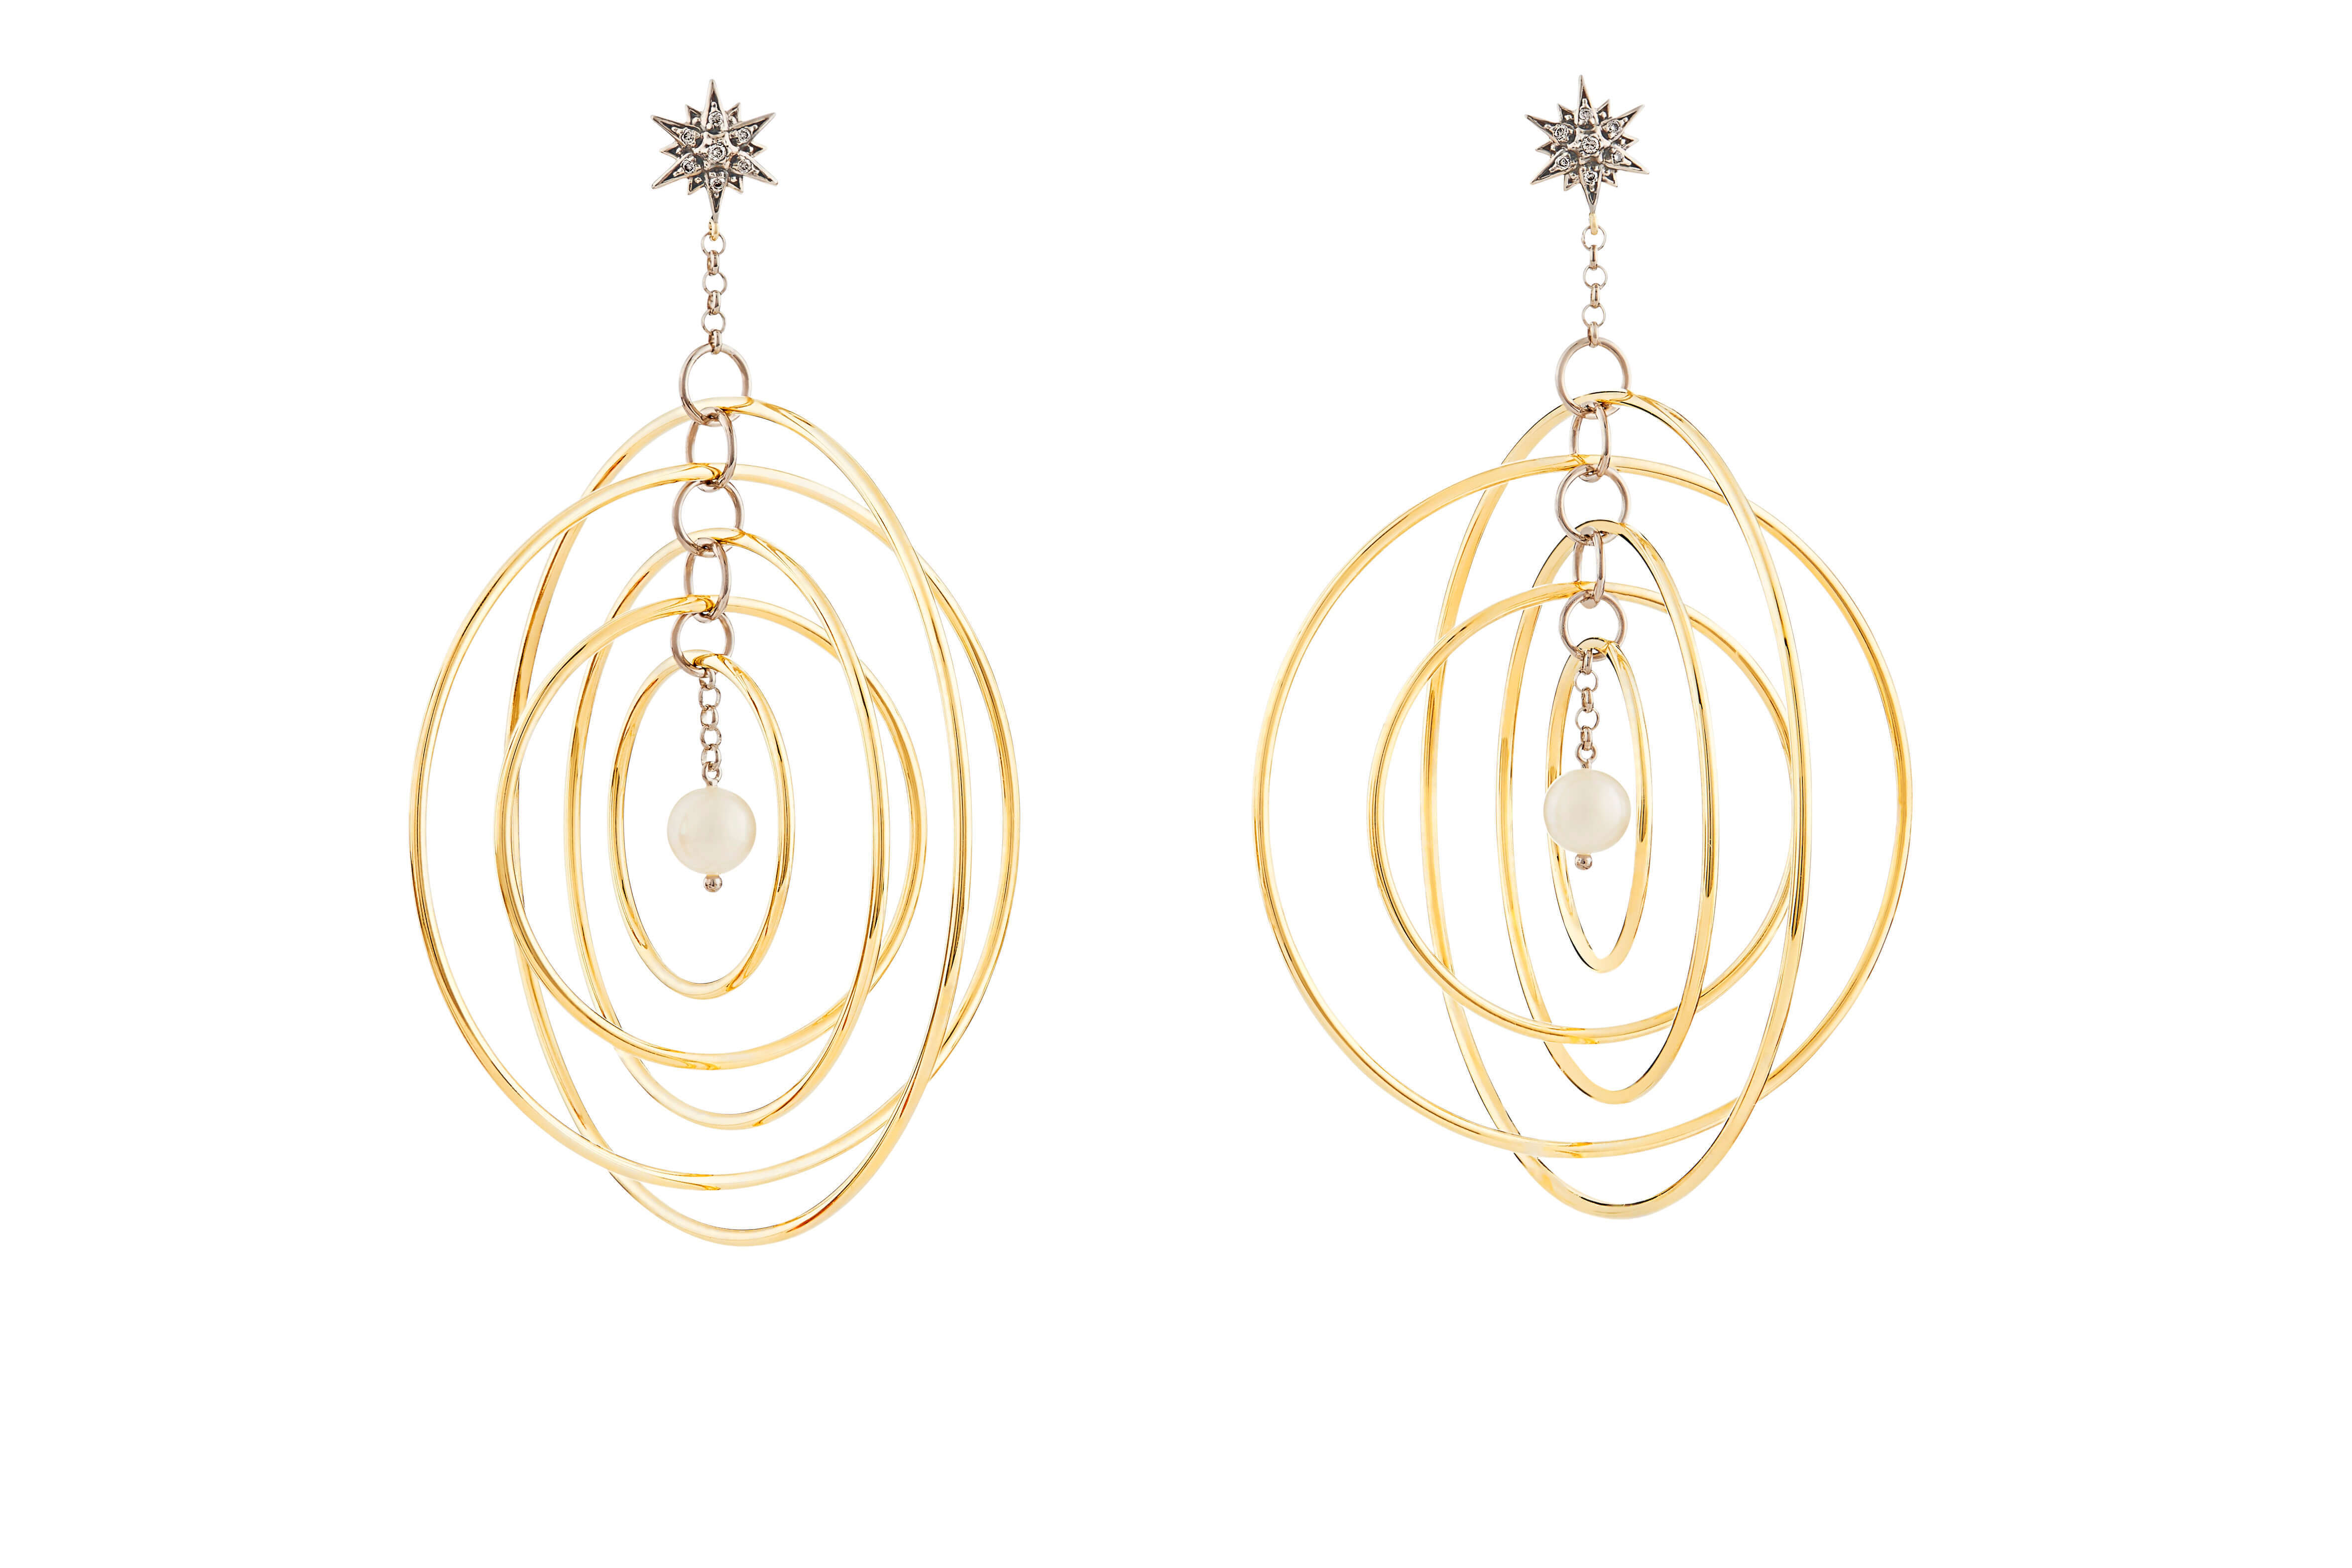 Pearls_of_Genesis_H.Stern_-_earrings_in_18K_gold,_pearls_and_diamonds_(B2P_205208)